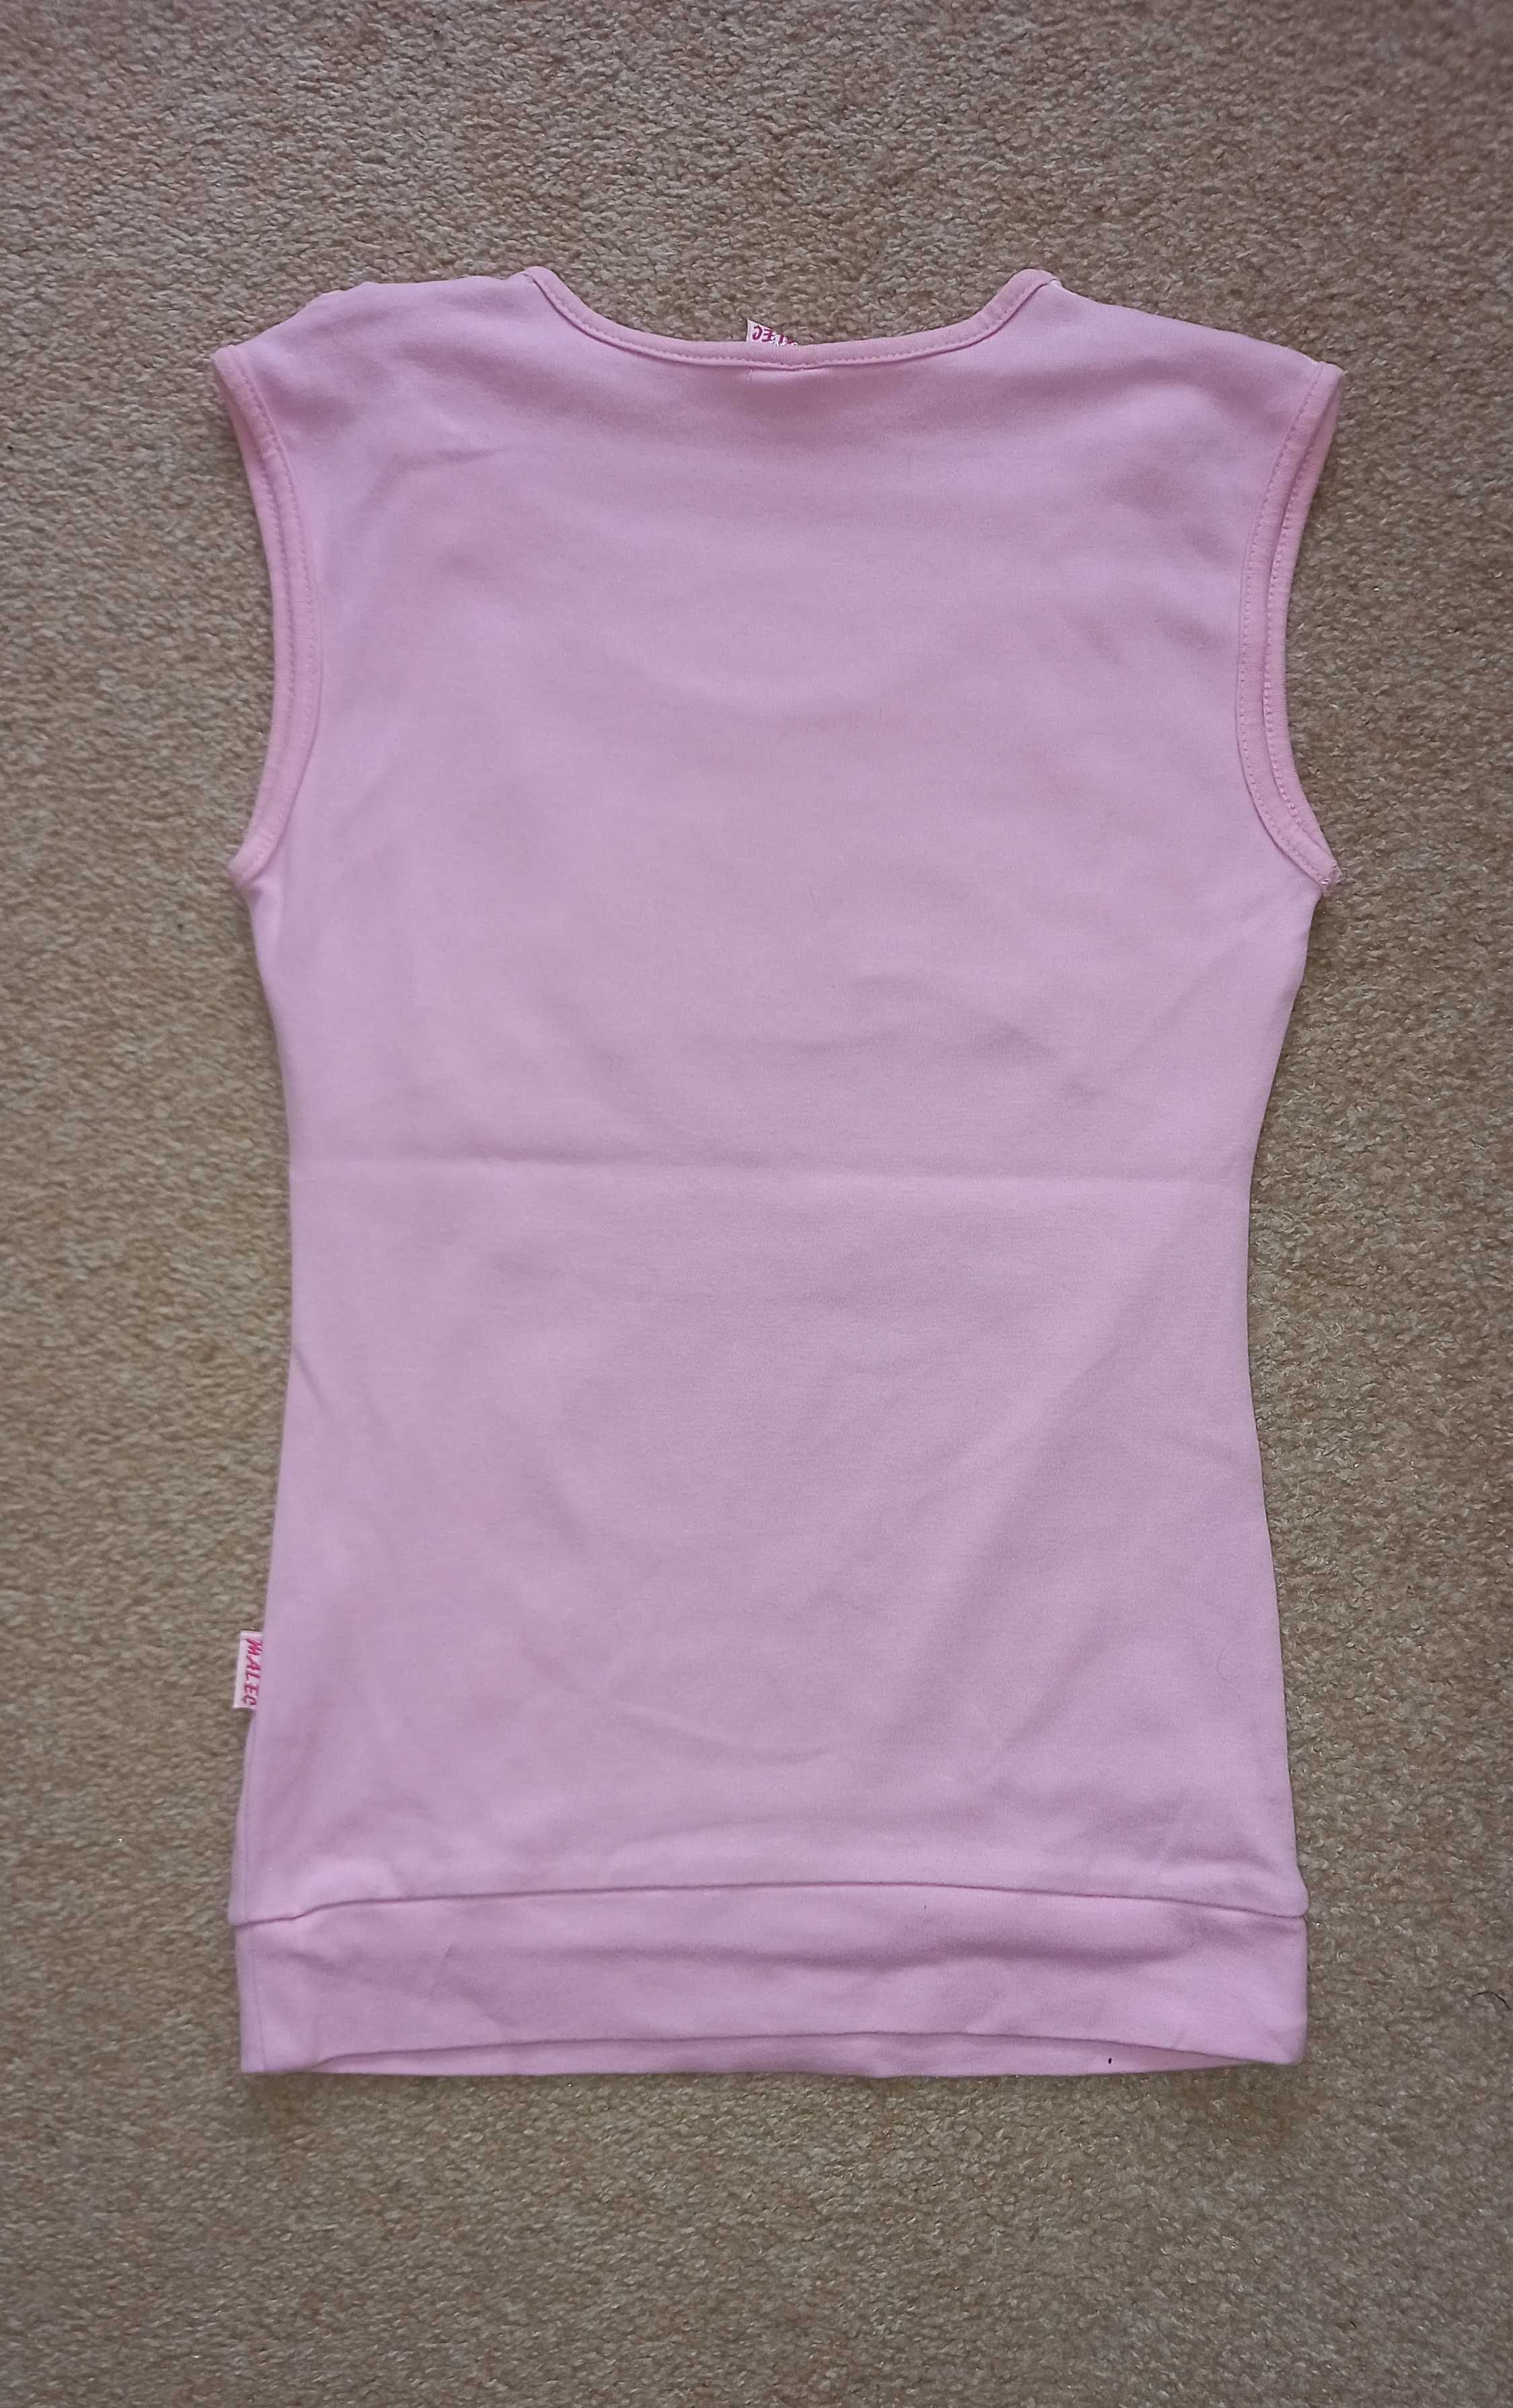 Bluzeczka dziewczęca różowa 134-140 Malec